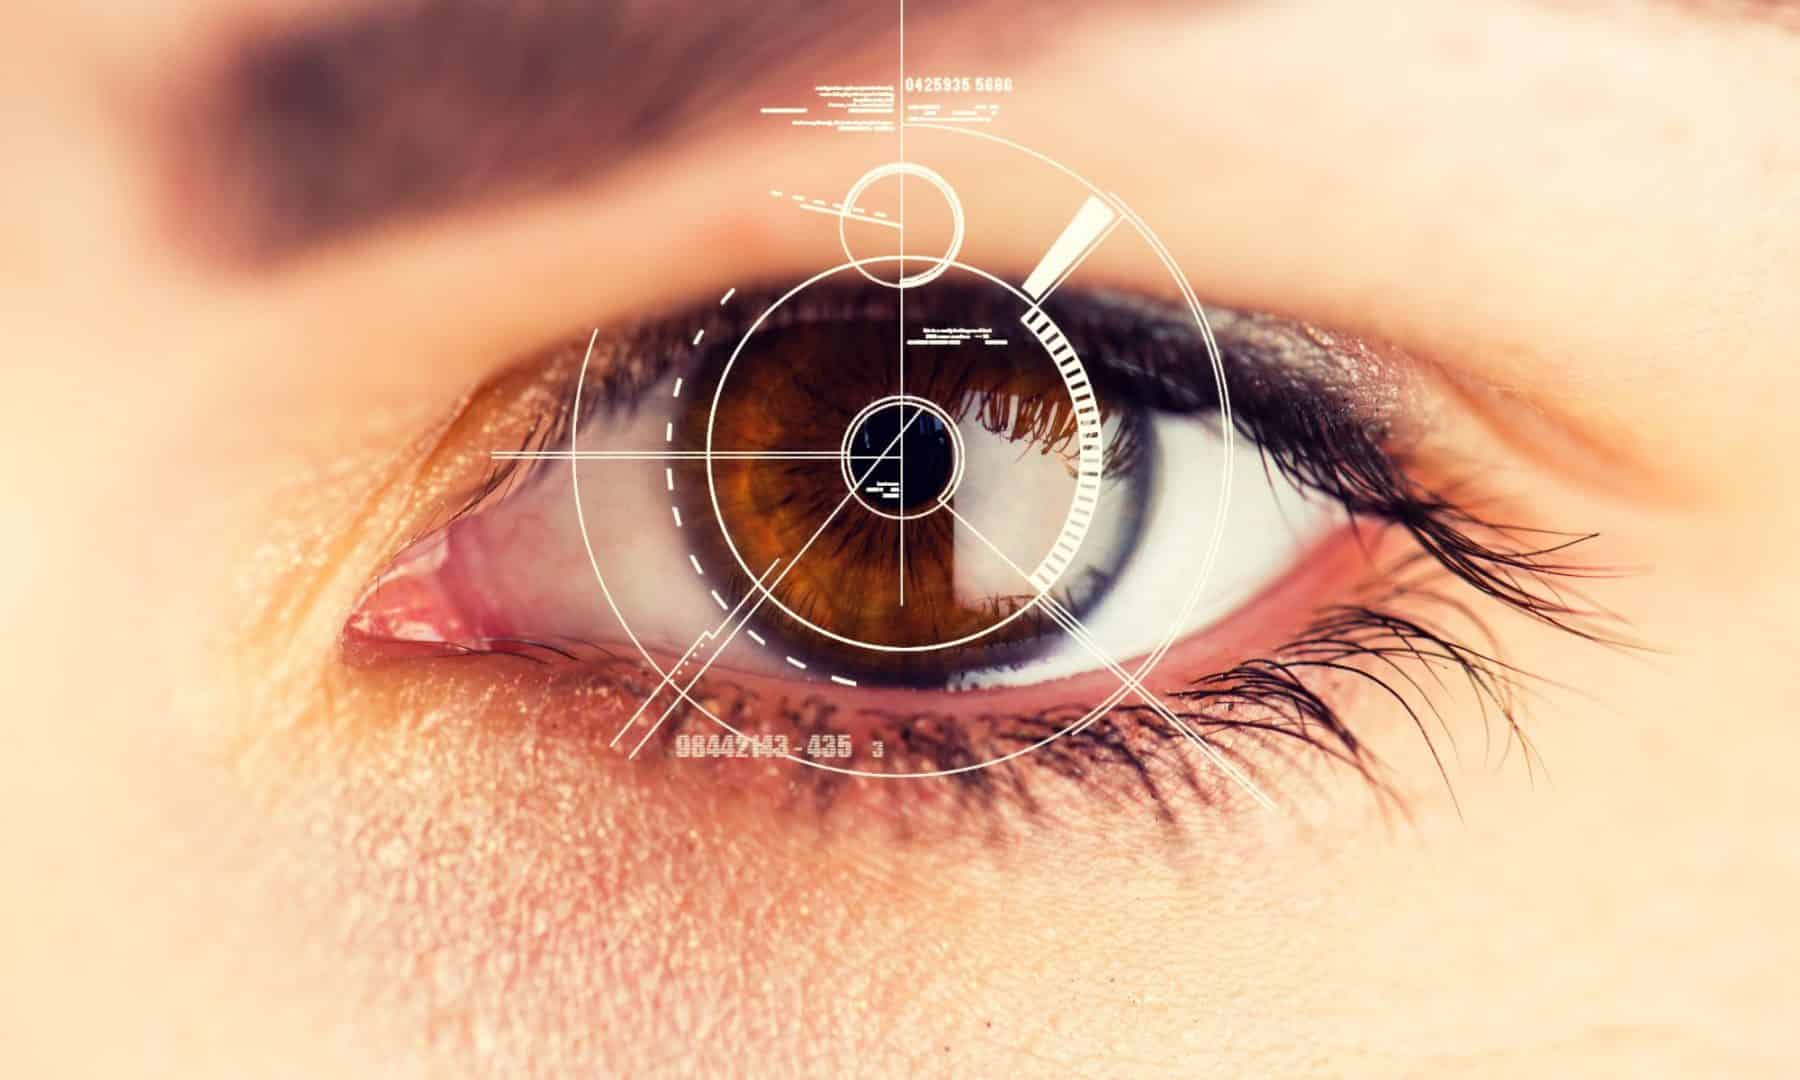 Visão - Característica, partes do olho, química da visão e percepção visual